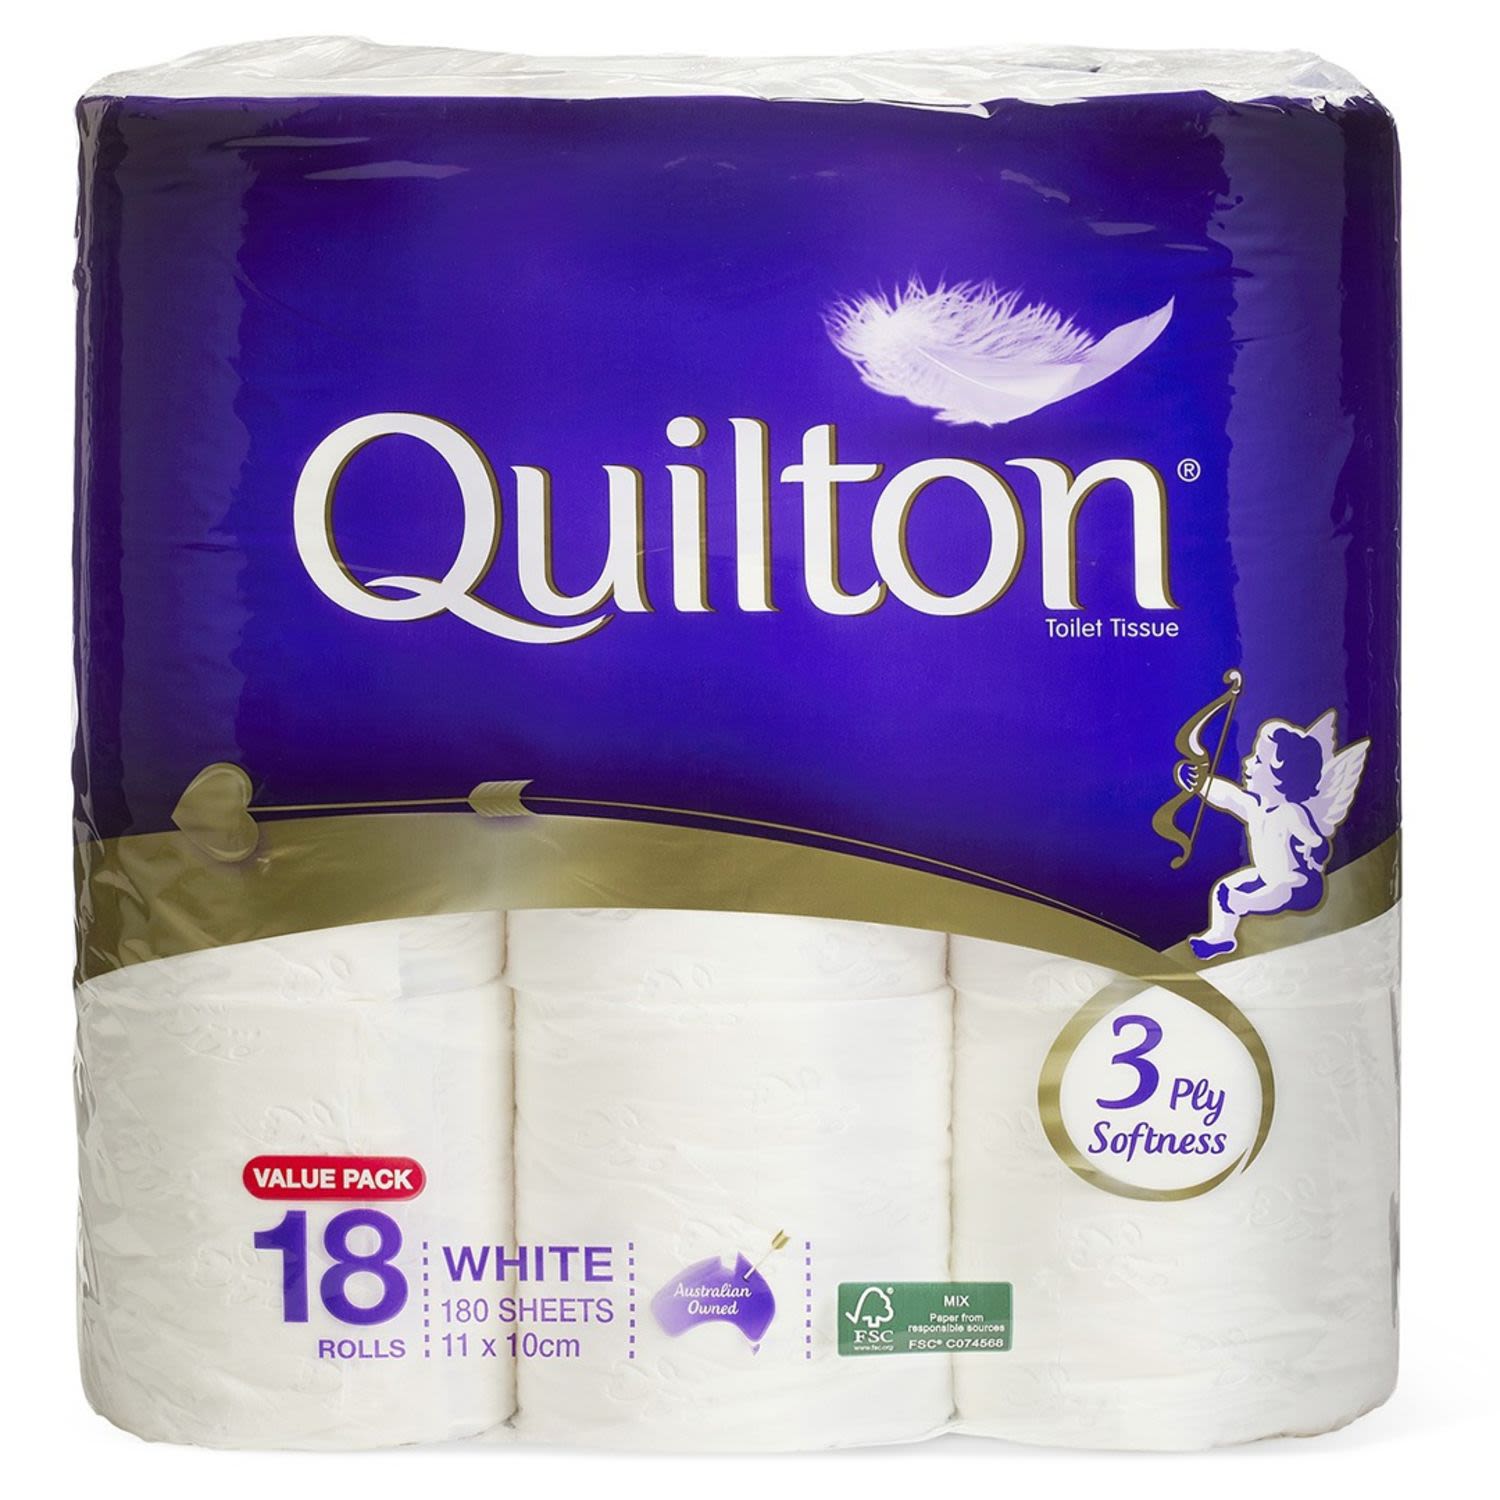 Quilton Classic White Toilet Tissue 3 Ply, 18 Each